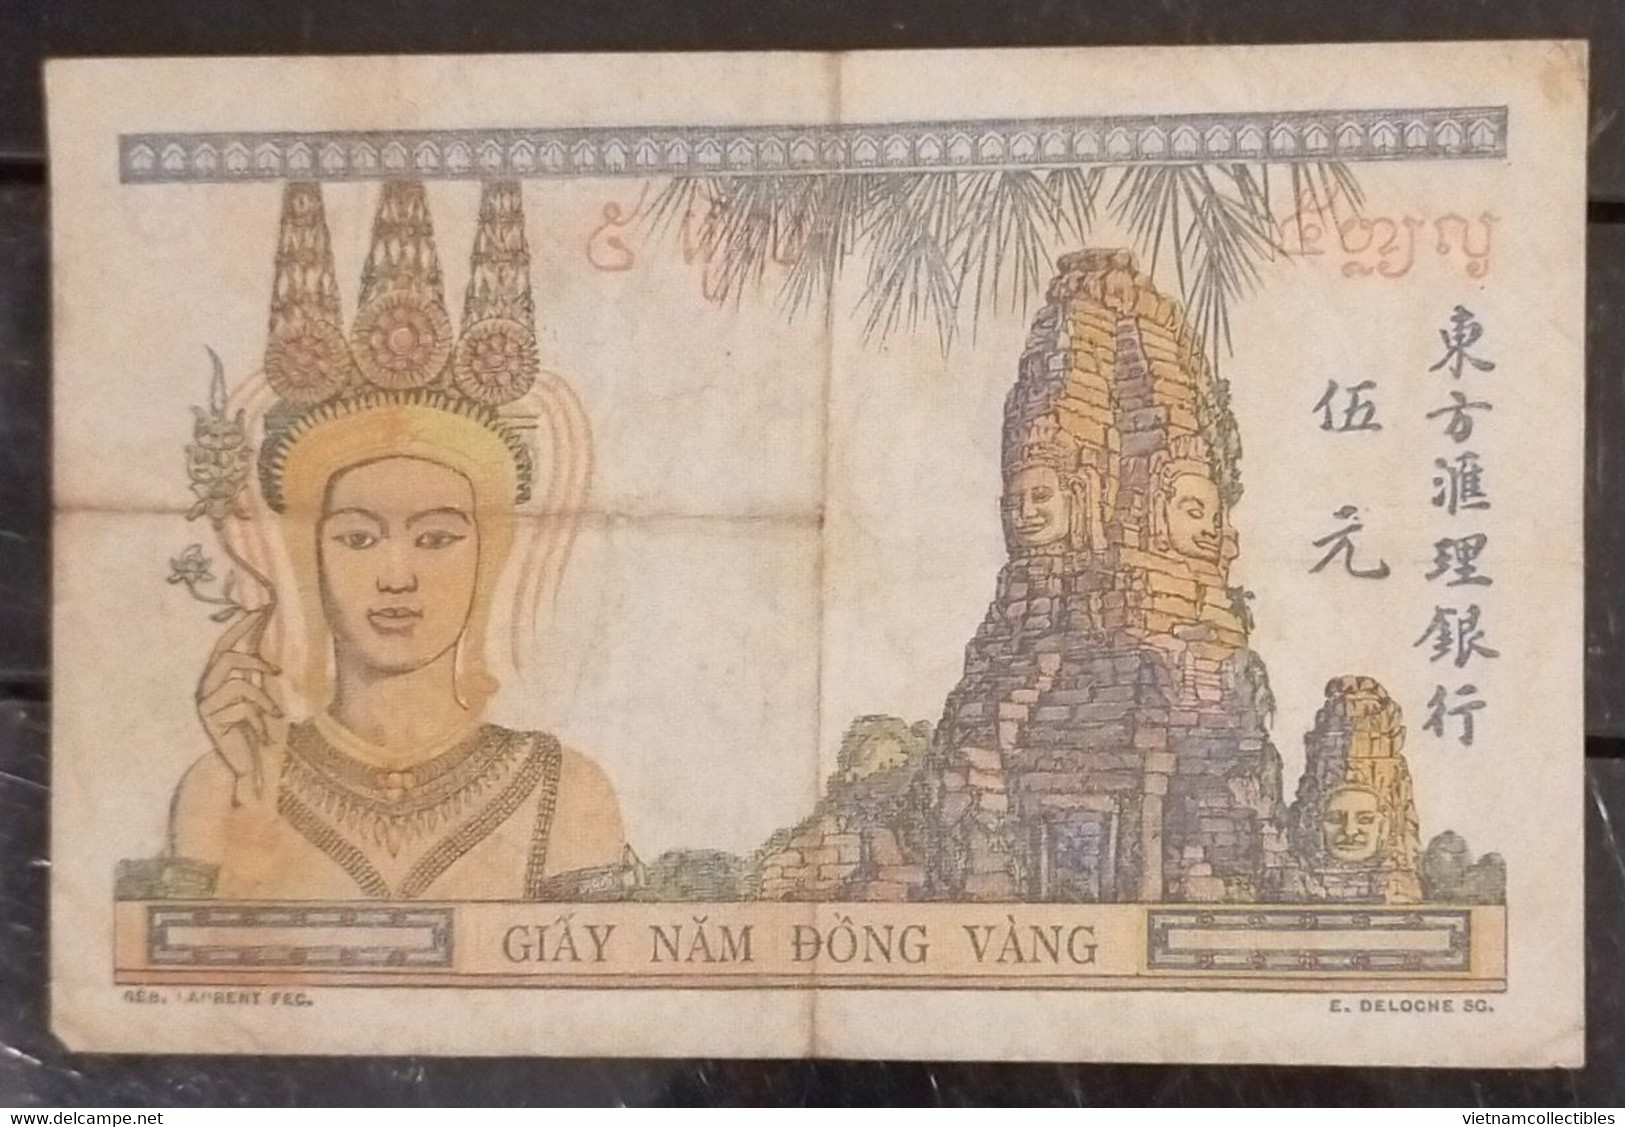 Indochine Indochina Vietnam Viet Nam Laos Cambodia 5 Piastres VF Banknote 1946 - Pick # 55c / 02 Photos - Indocina